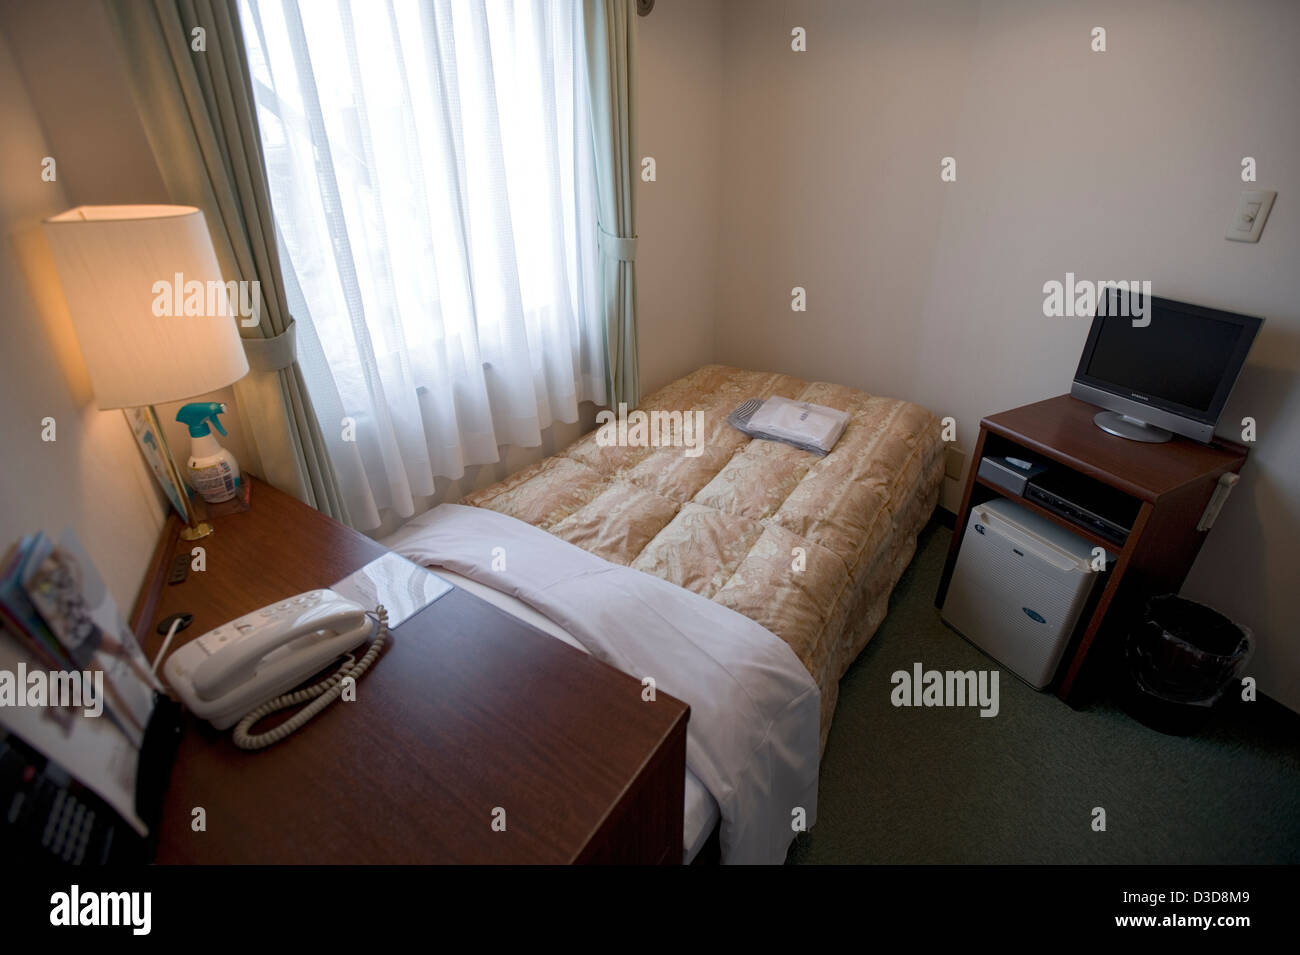 Sauber, ordentlich und aufgeräumt, ist ein Einzelzimmer in einem japanischen Business-Hotel, klein von westlichen Standards, aber sehr preiswert und sicher. Stockfoto